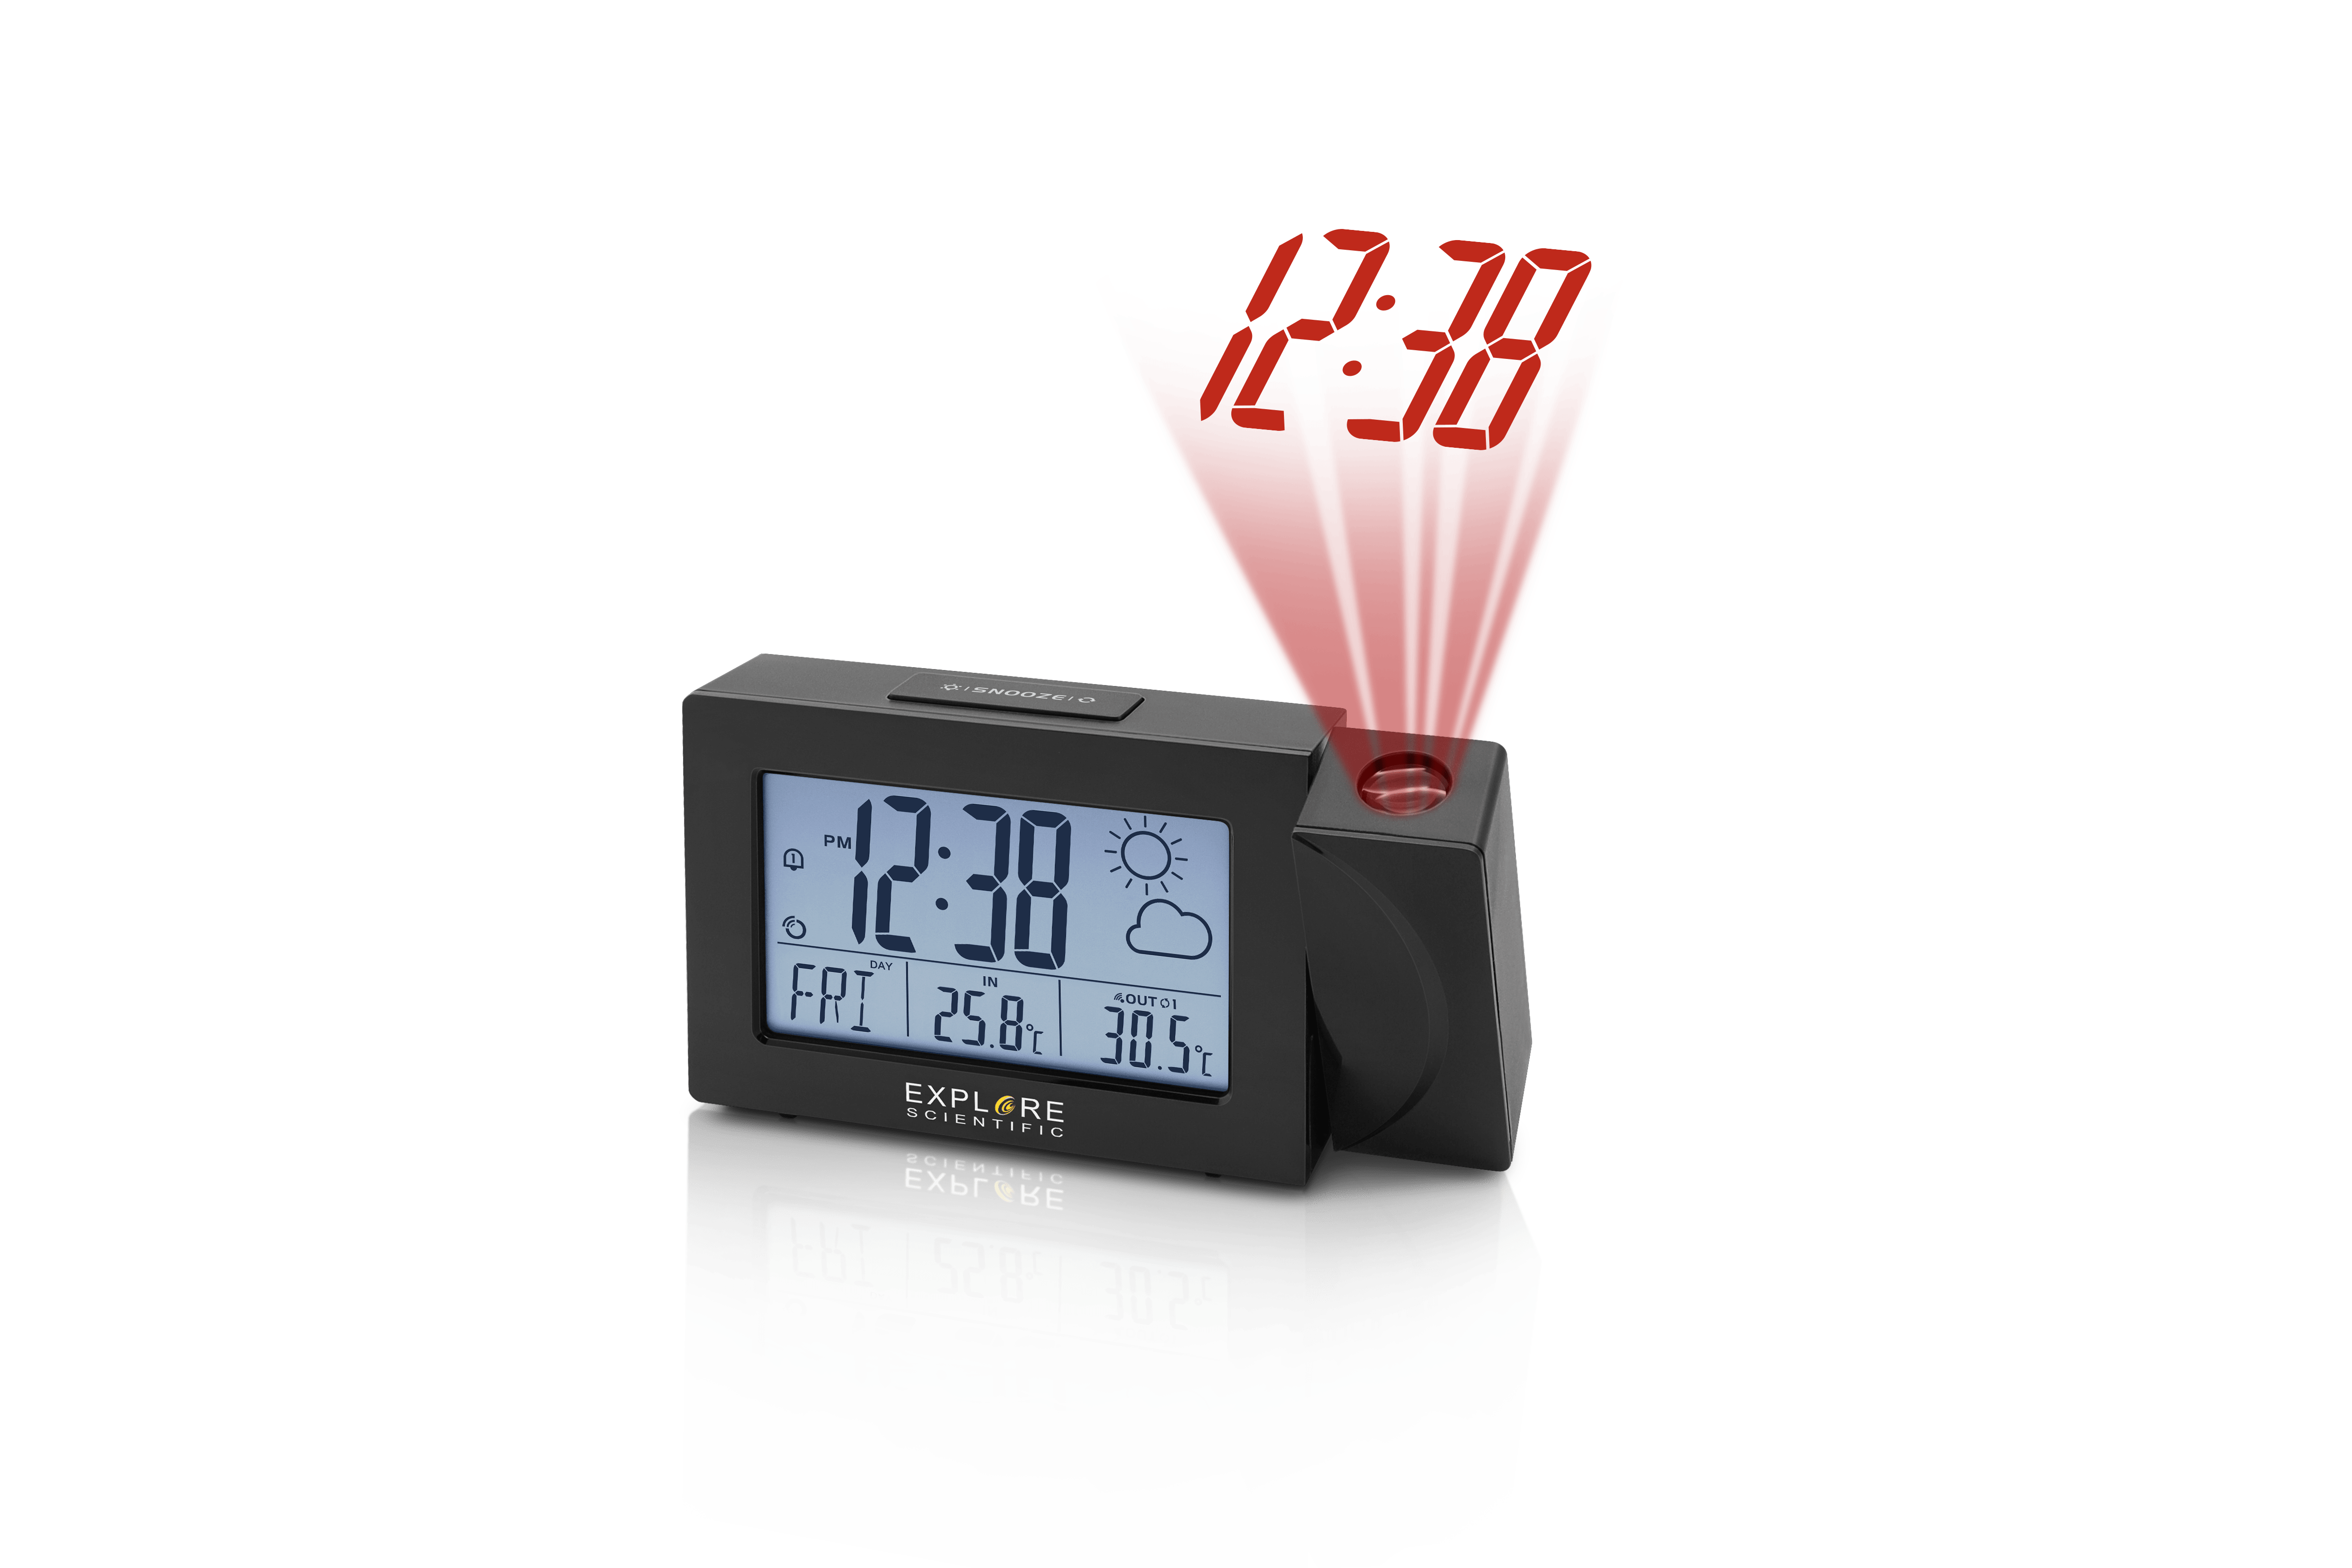 Digital Projection Clock Weather Station Hygrometer Tempmeter Black USB Charging Port with Snooze Function LCD Ceiling Projection Clock 